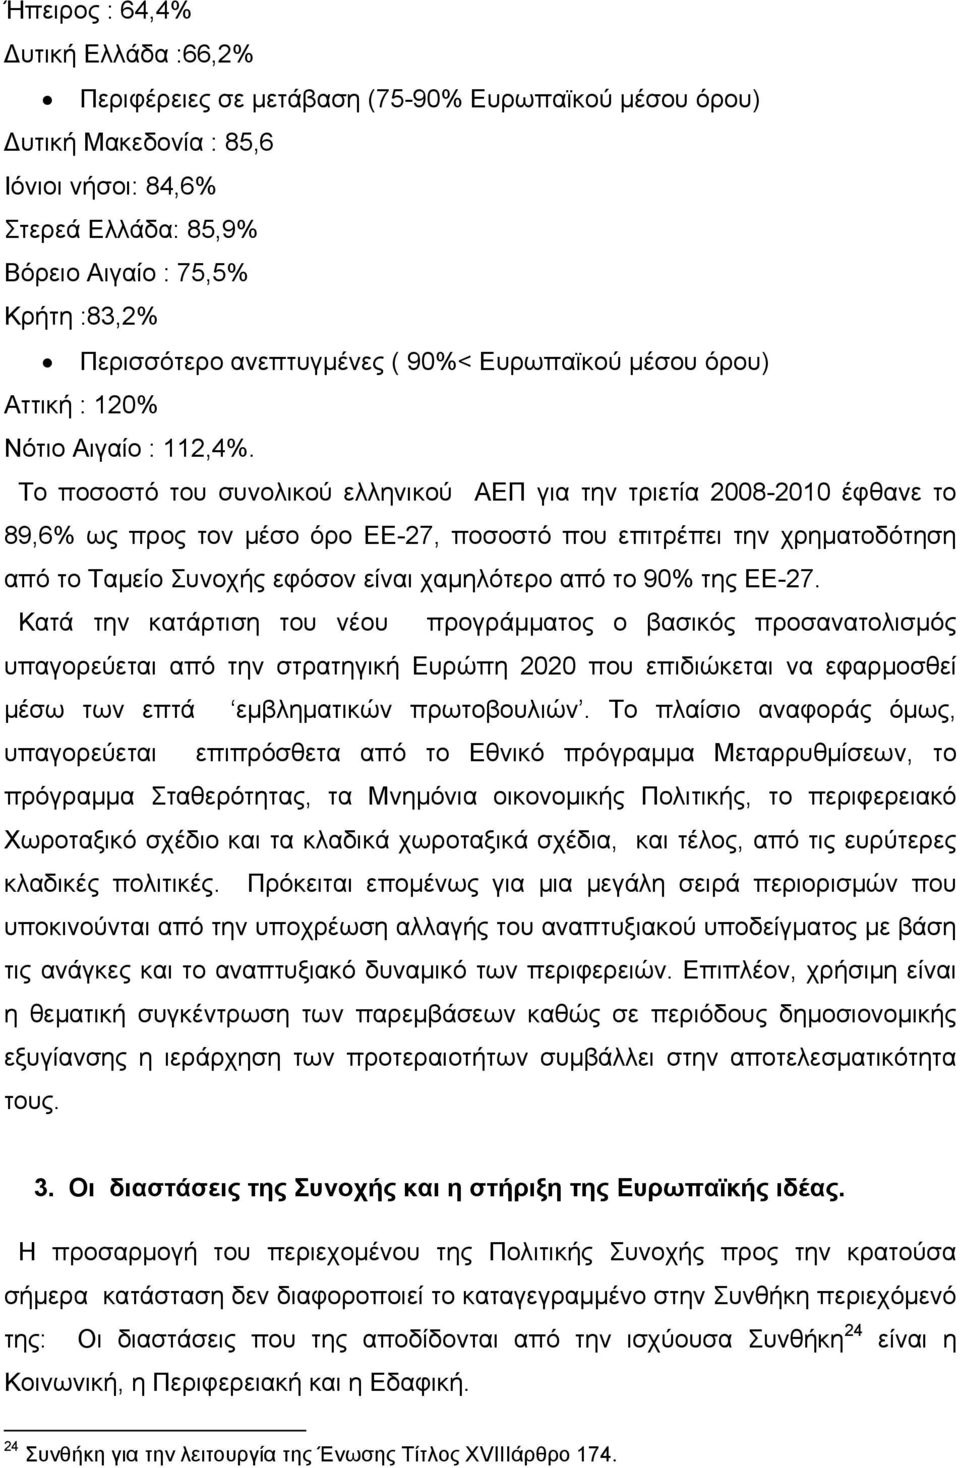 Το ποσοστό του συνολικού ελληνικού ΑΕΠ για την τριετία 2008-2010 έφθανε το 89,6% ως προς τον μέσο όρο ΕΕ-27, ποσοστό που επιτρέπει την χρηματοδότηση από το Ταμείο Συνοχής εφόσον είναι χαμηλότερο από